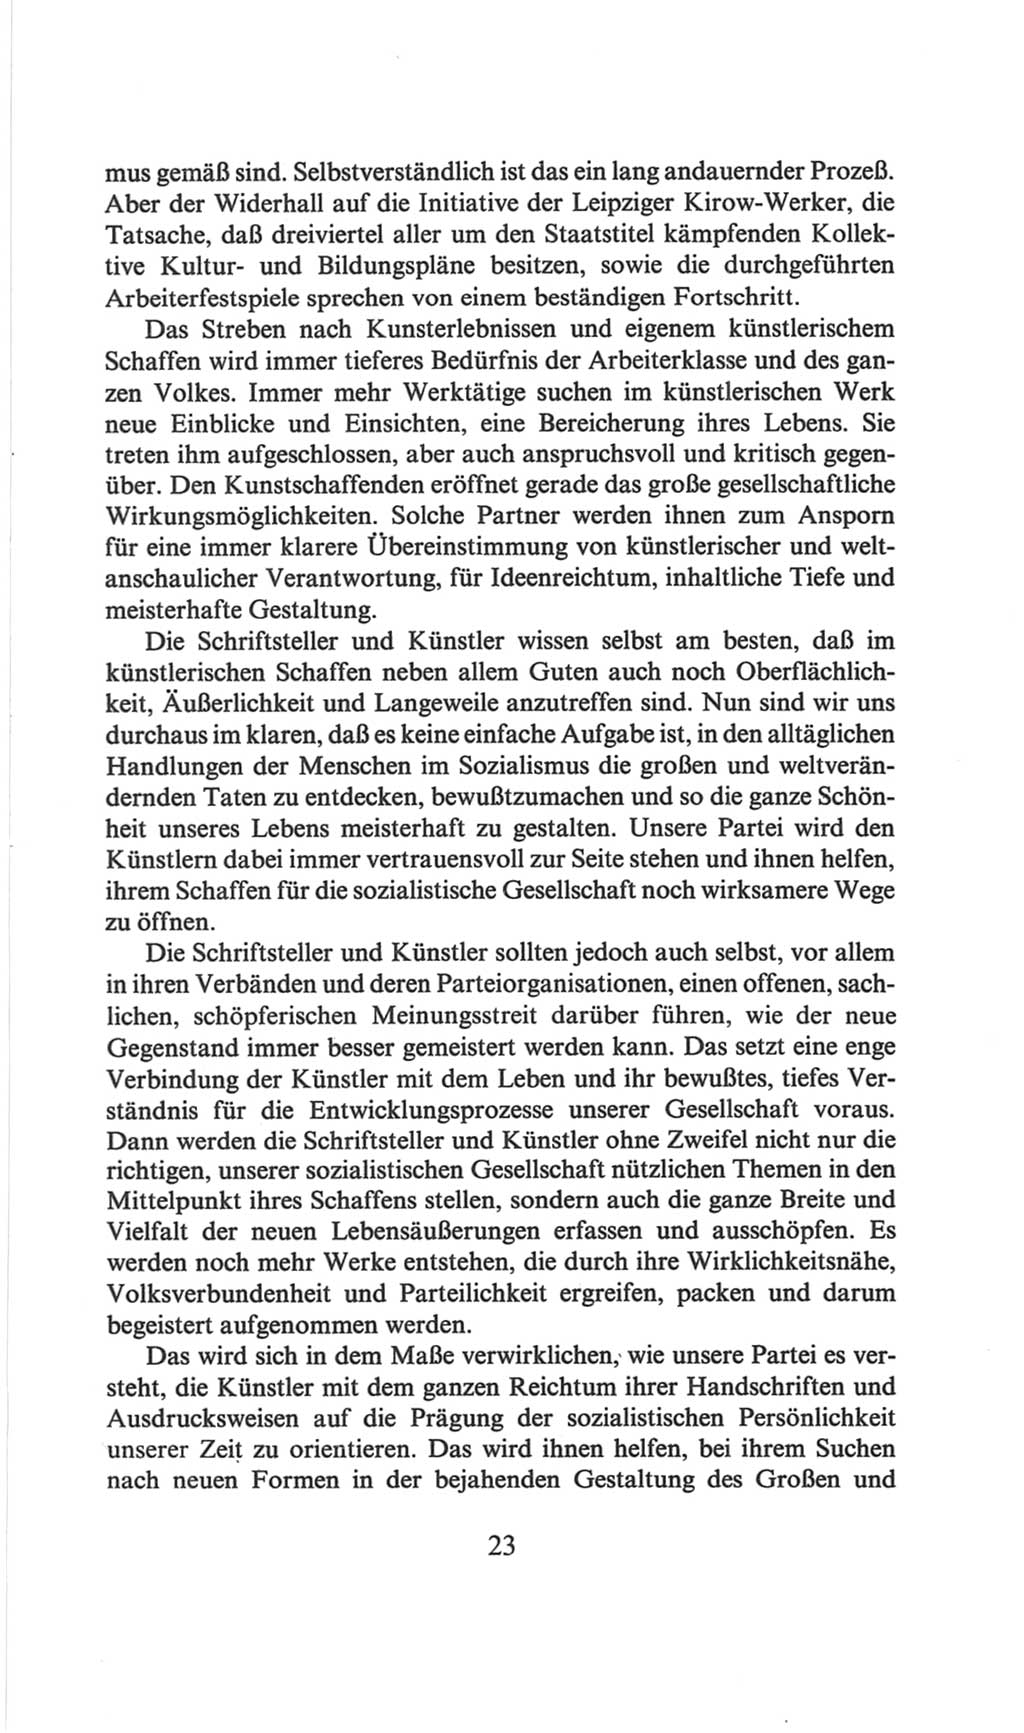 Volkskammer (VK) der Deutschen Demokratischen Republik (DDR), 6. Wahlperiode 1971-1976, Seite 23 (VK. DDR 6. WP. 1971-1976, S. 23)